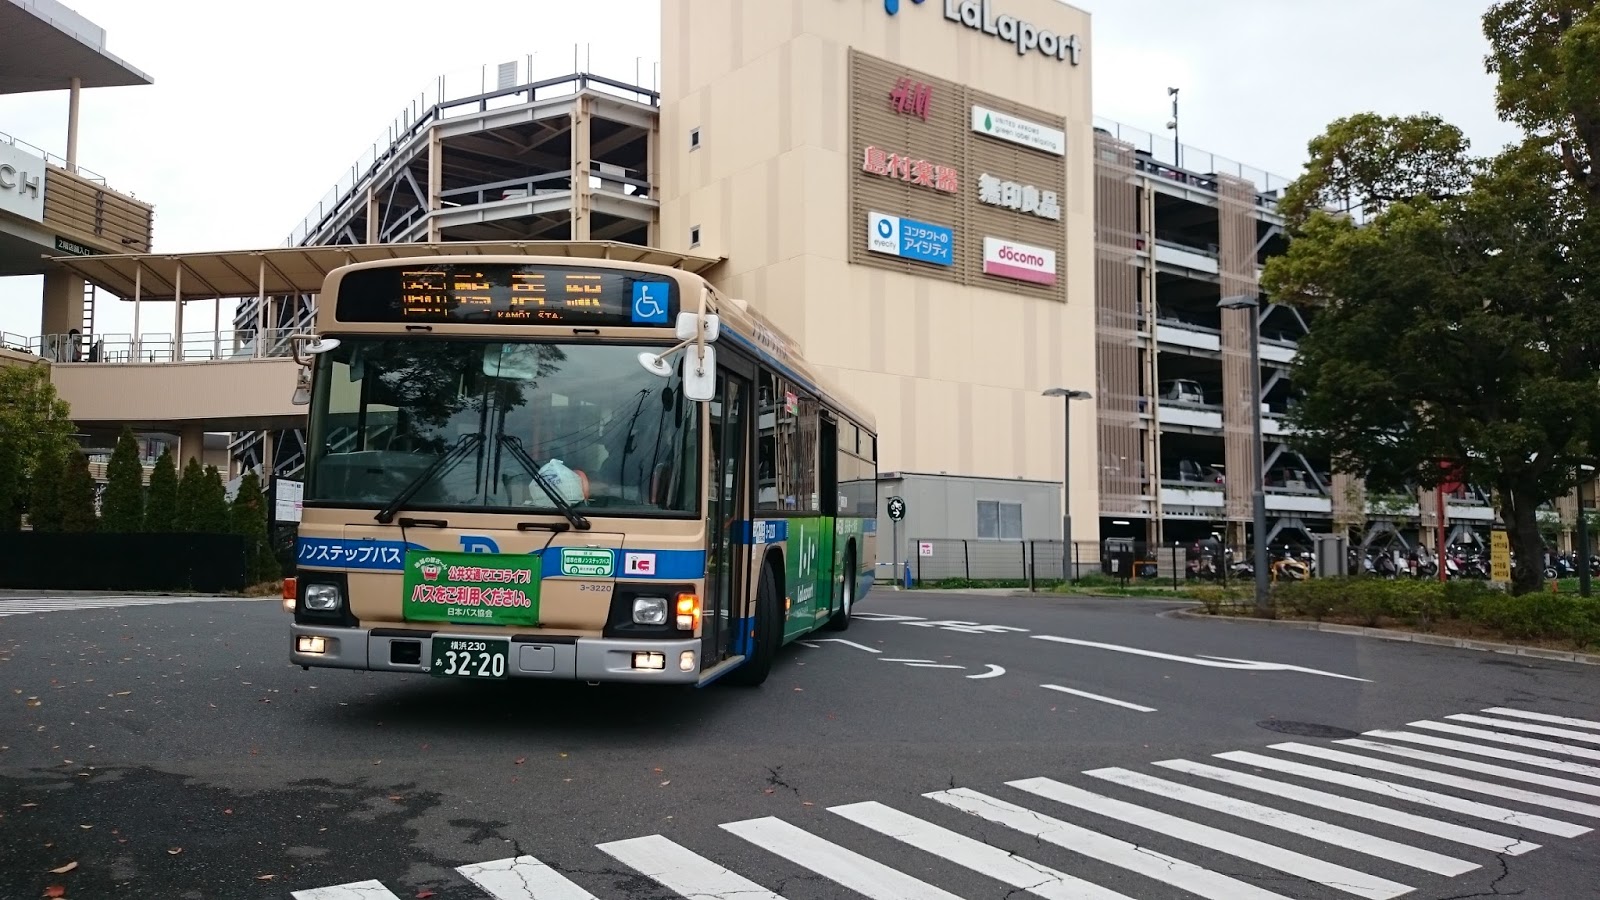 気ままに撮影を ららぽーと横浜 Ikea港北シャトルバス